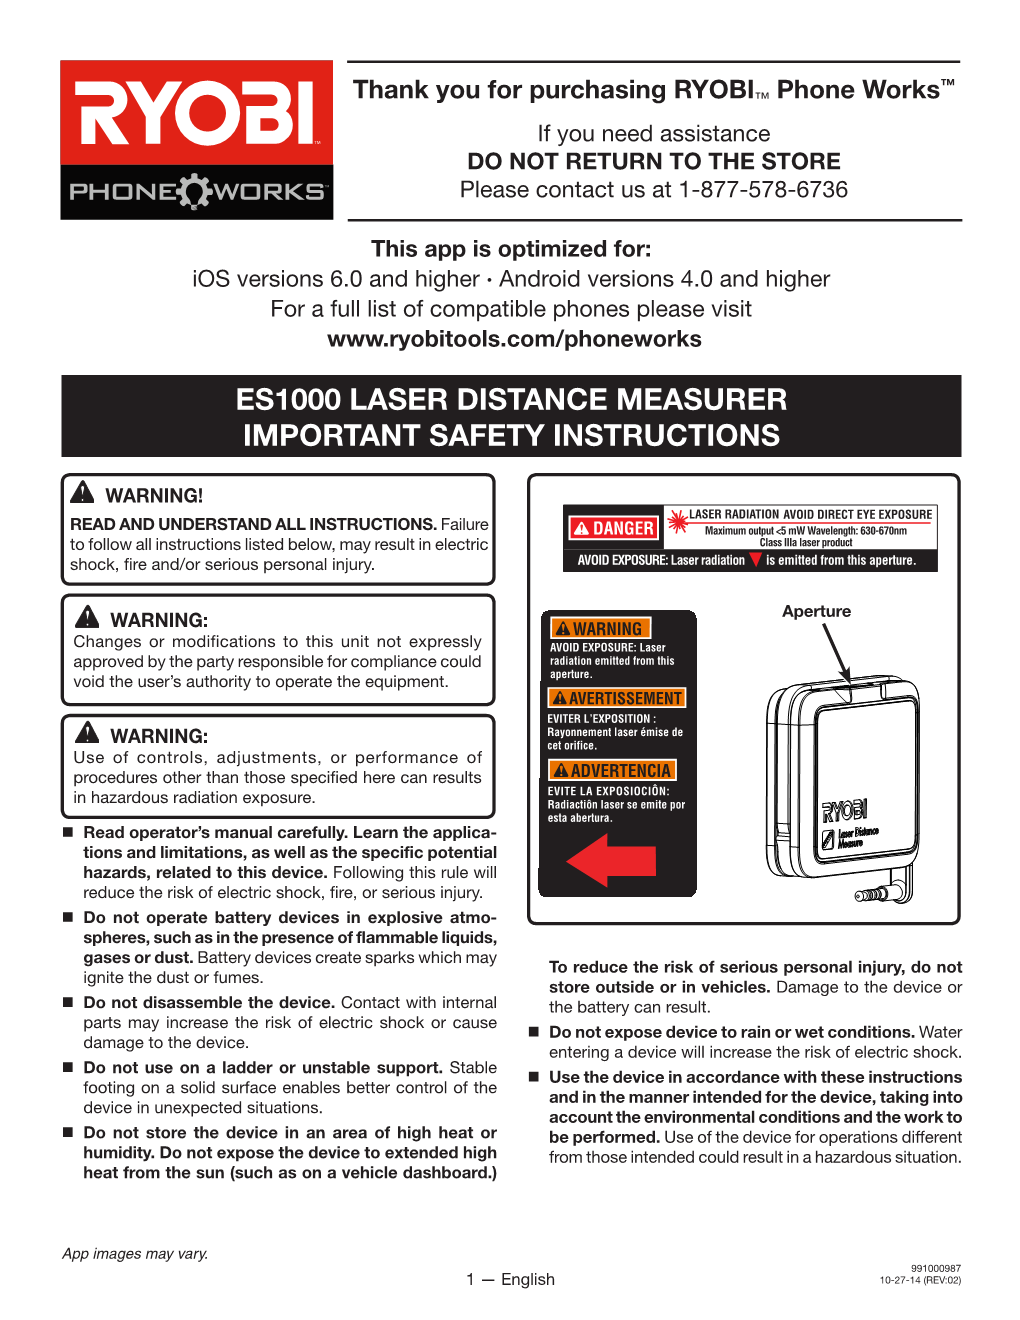 Es1000 Laser Distance Measurer Important Safety Instructions